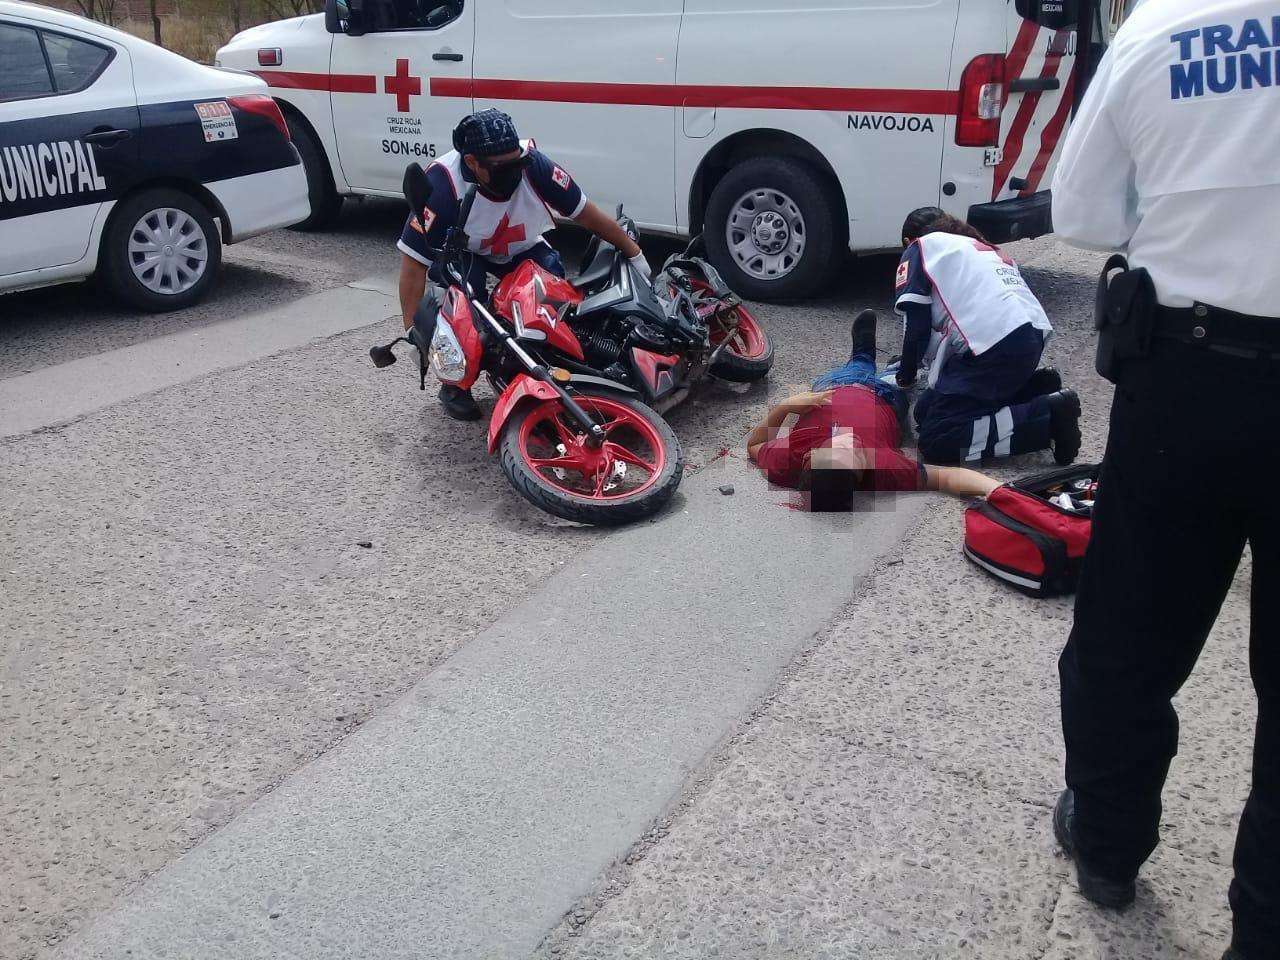 Motociclista navojoense se impacta contra un carro y se fractura la cadera